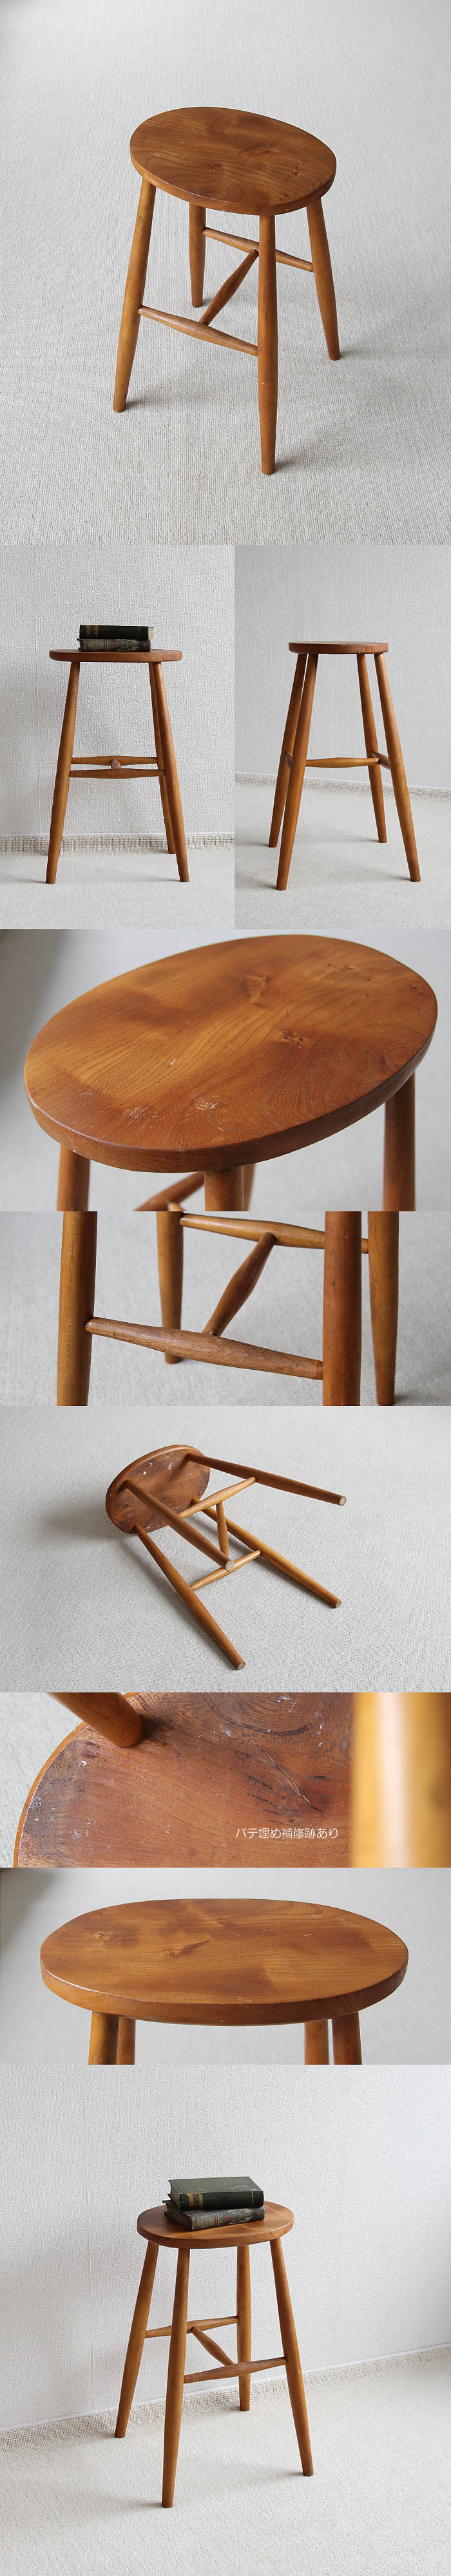 イギリス アンティーク ハイスツール 木製椅子 飾り台 カントリー 無垢材 家具 V-272